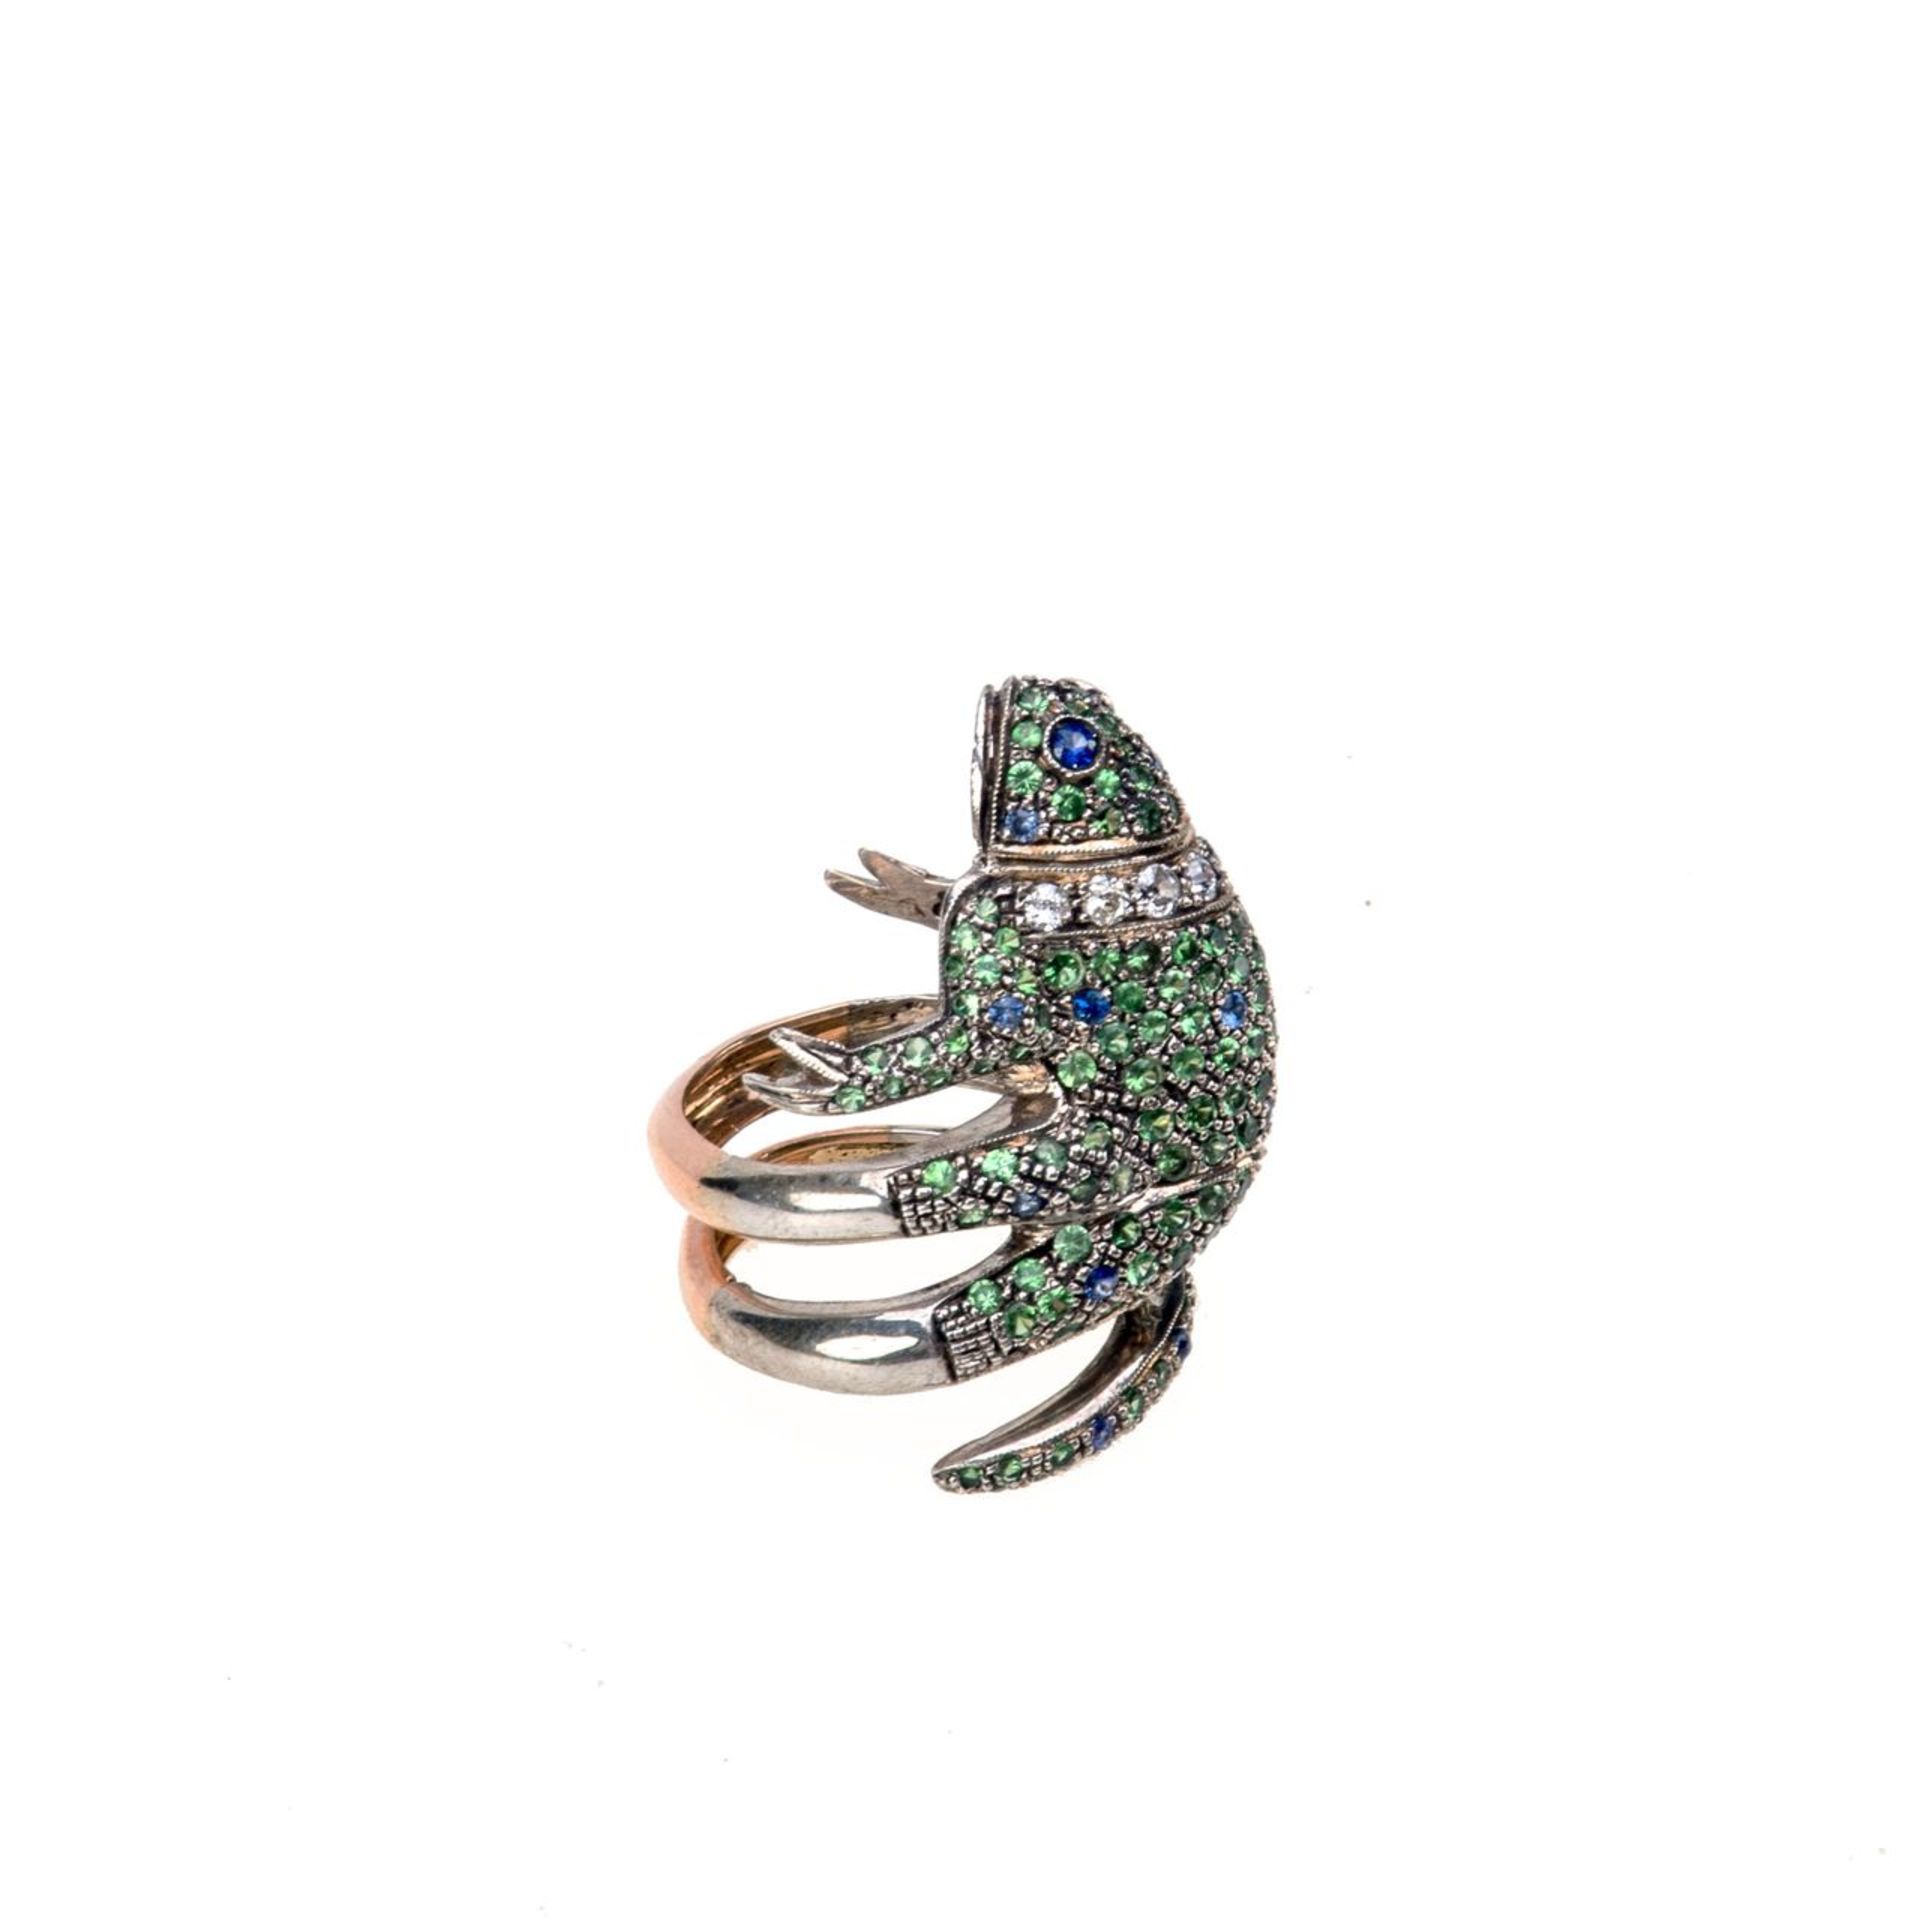 Ring mit FroschfigurSilber, vergoldet. Doppelte Ringschiene, Ringkopf in Form eines Frosches besetzt